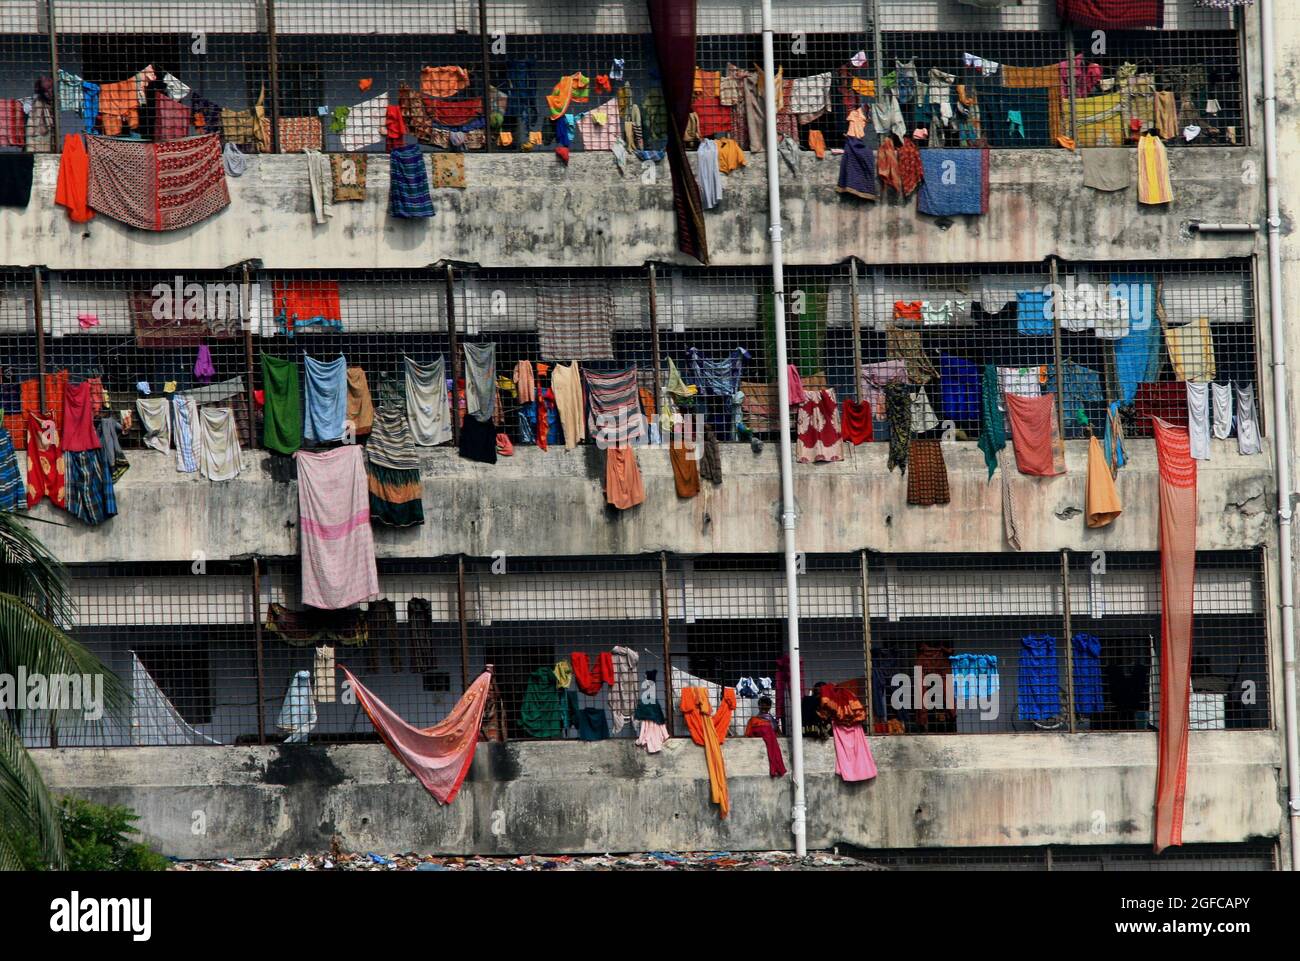 Tausende Menschen leben rund um den Fluss Buriganga. Dieser Fluss ist die einzige Wasserquelle in diesen Gebieten. Die Menschen nutzen das Flusswasser nicht nur für den täglichen Bedarf, sondern auch für alle Arten von Ritualen. Dieses Flusswasser wird bewusst durch die Abfälle verschiedener Industrien kontaminiert. Dhaka, Bangladesch. 20. November 2007. Stockfoto